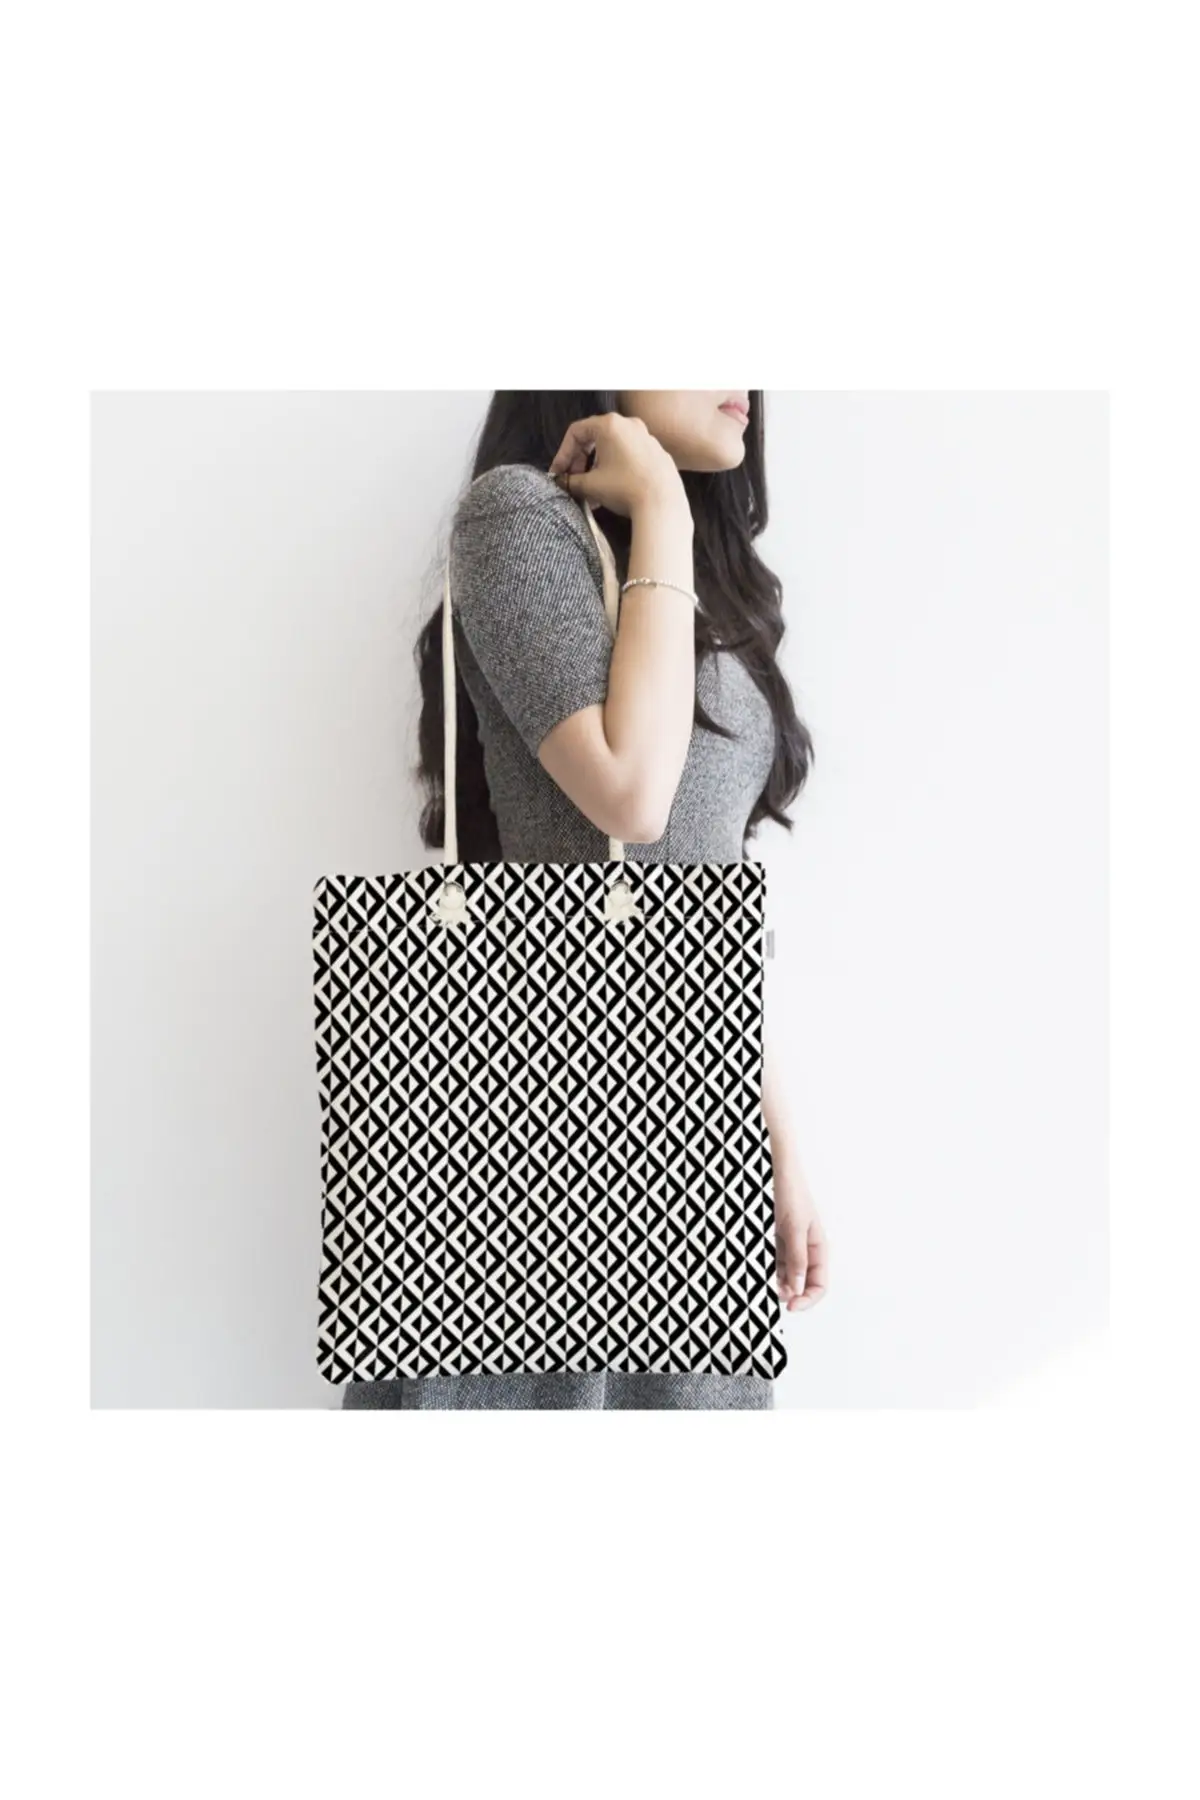 

Женская пляжная сумка, черная, белая, треугольная, с геометрическим узором, тканевая сумка-тоут на молнии с цифровым принтом, летние сумки дл...